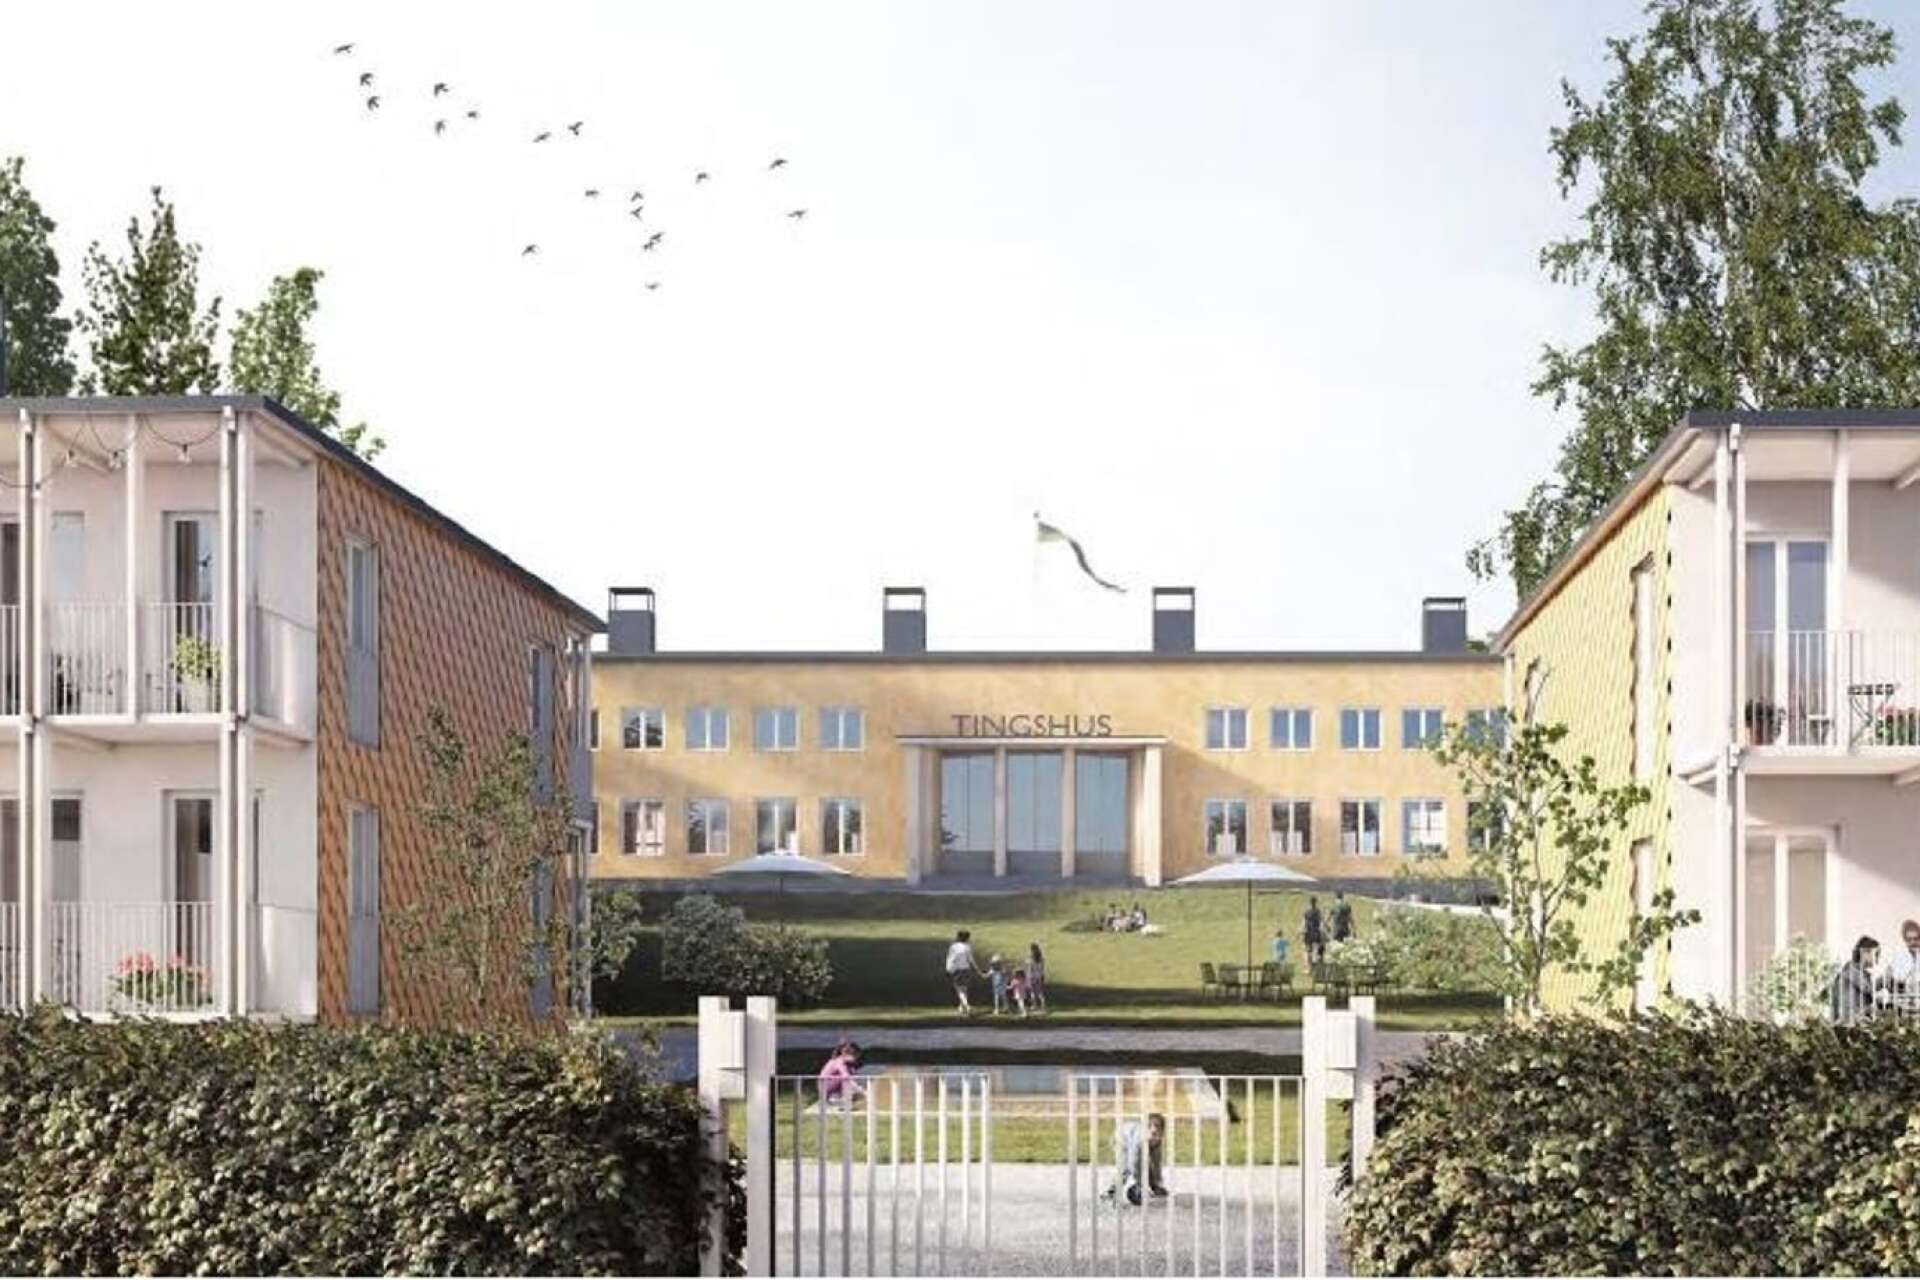 Så här ser Oxenborgen Fastigheters senaste förslag för Tingshuset ut, sett från Ekebyvägen.